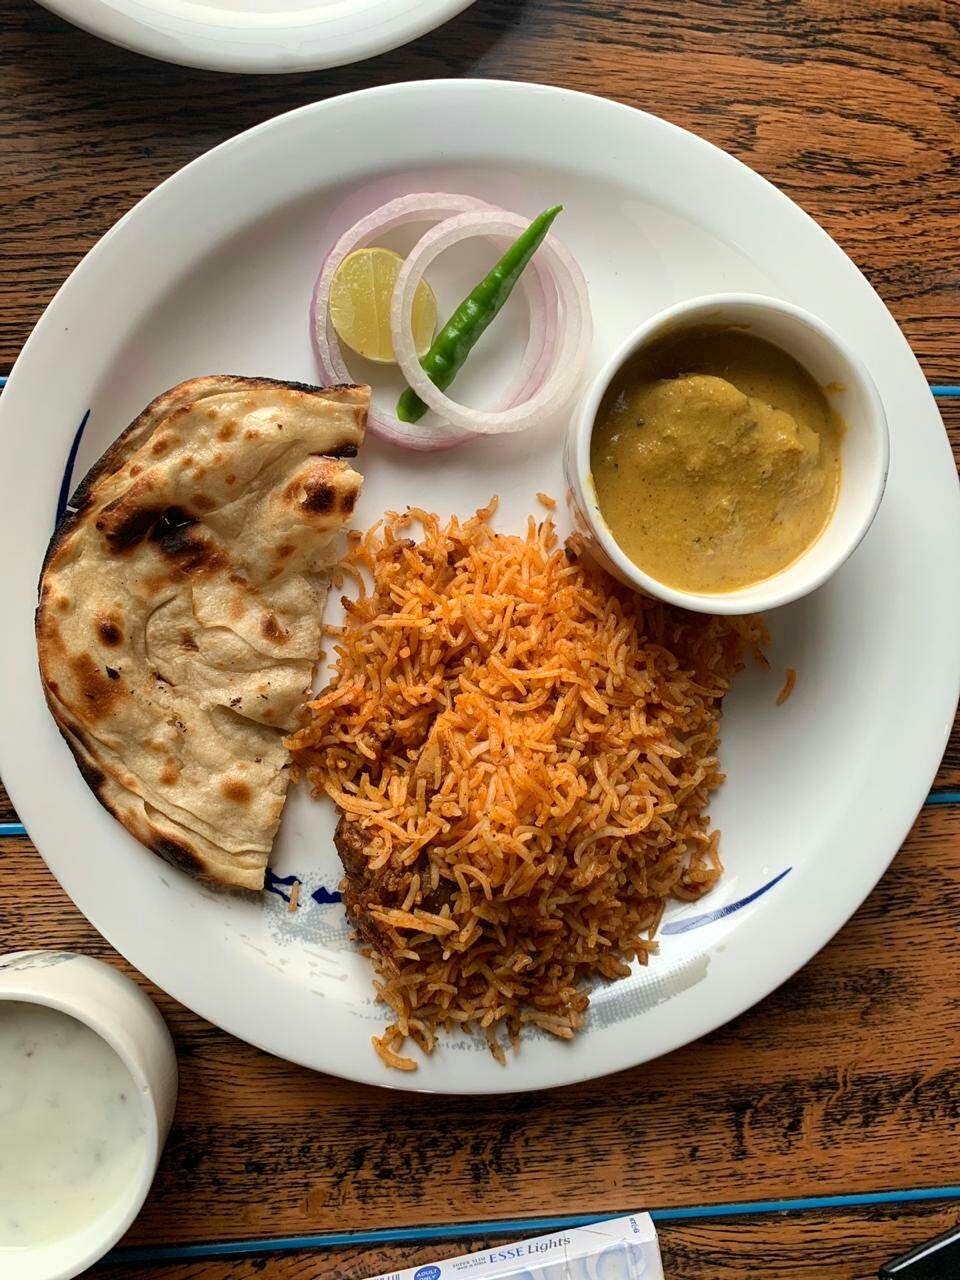 Dish,Food,Cuisine,Ingredient,Produce,Raita,Staple food,Indian cuisine,Sindhi cuisine,Roti